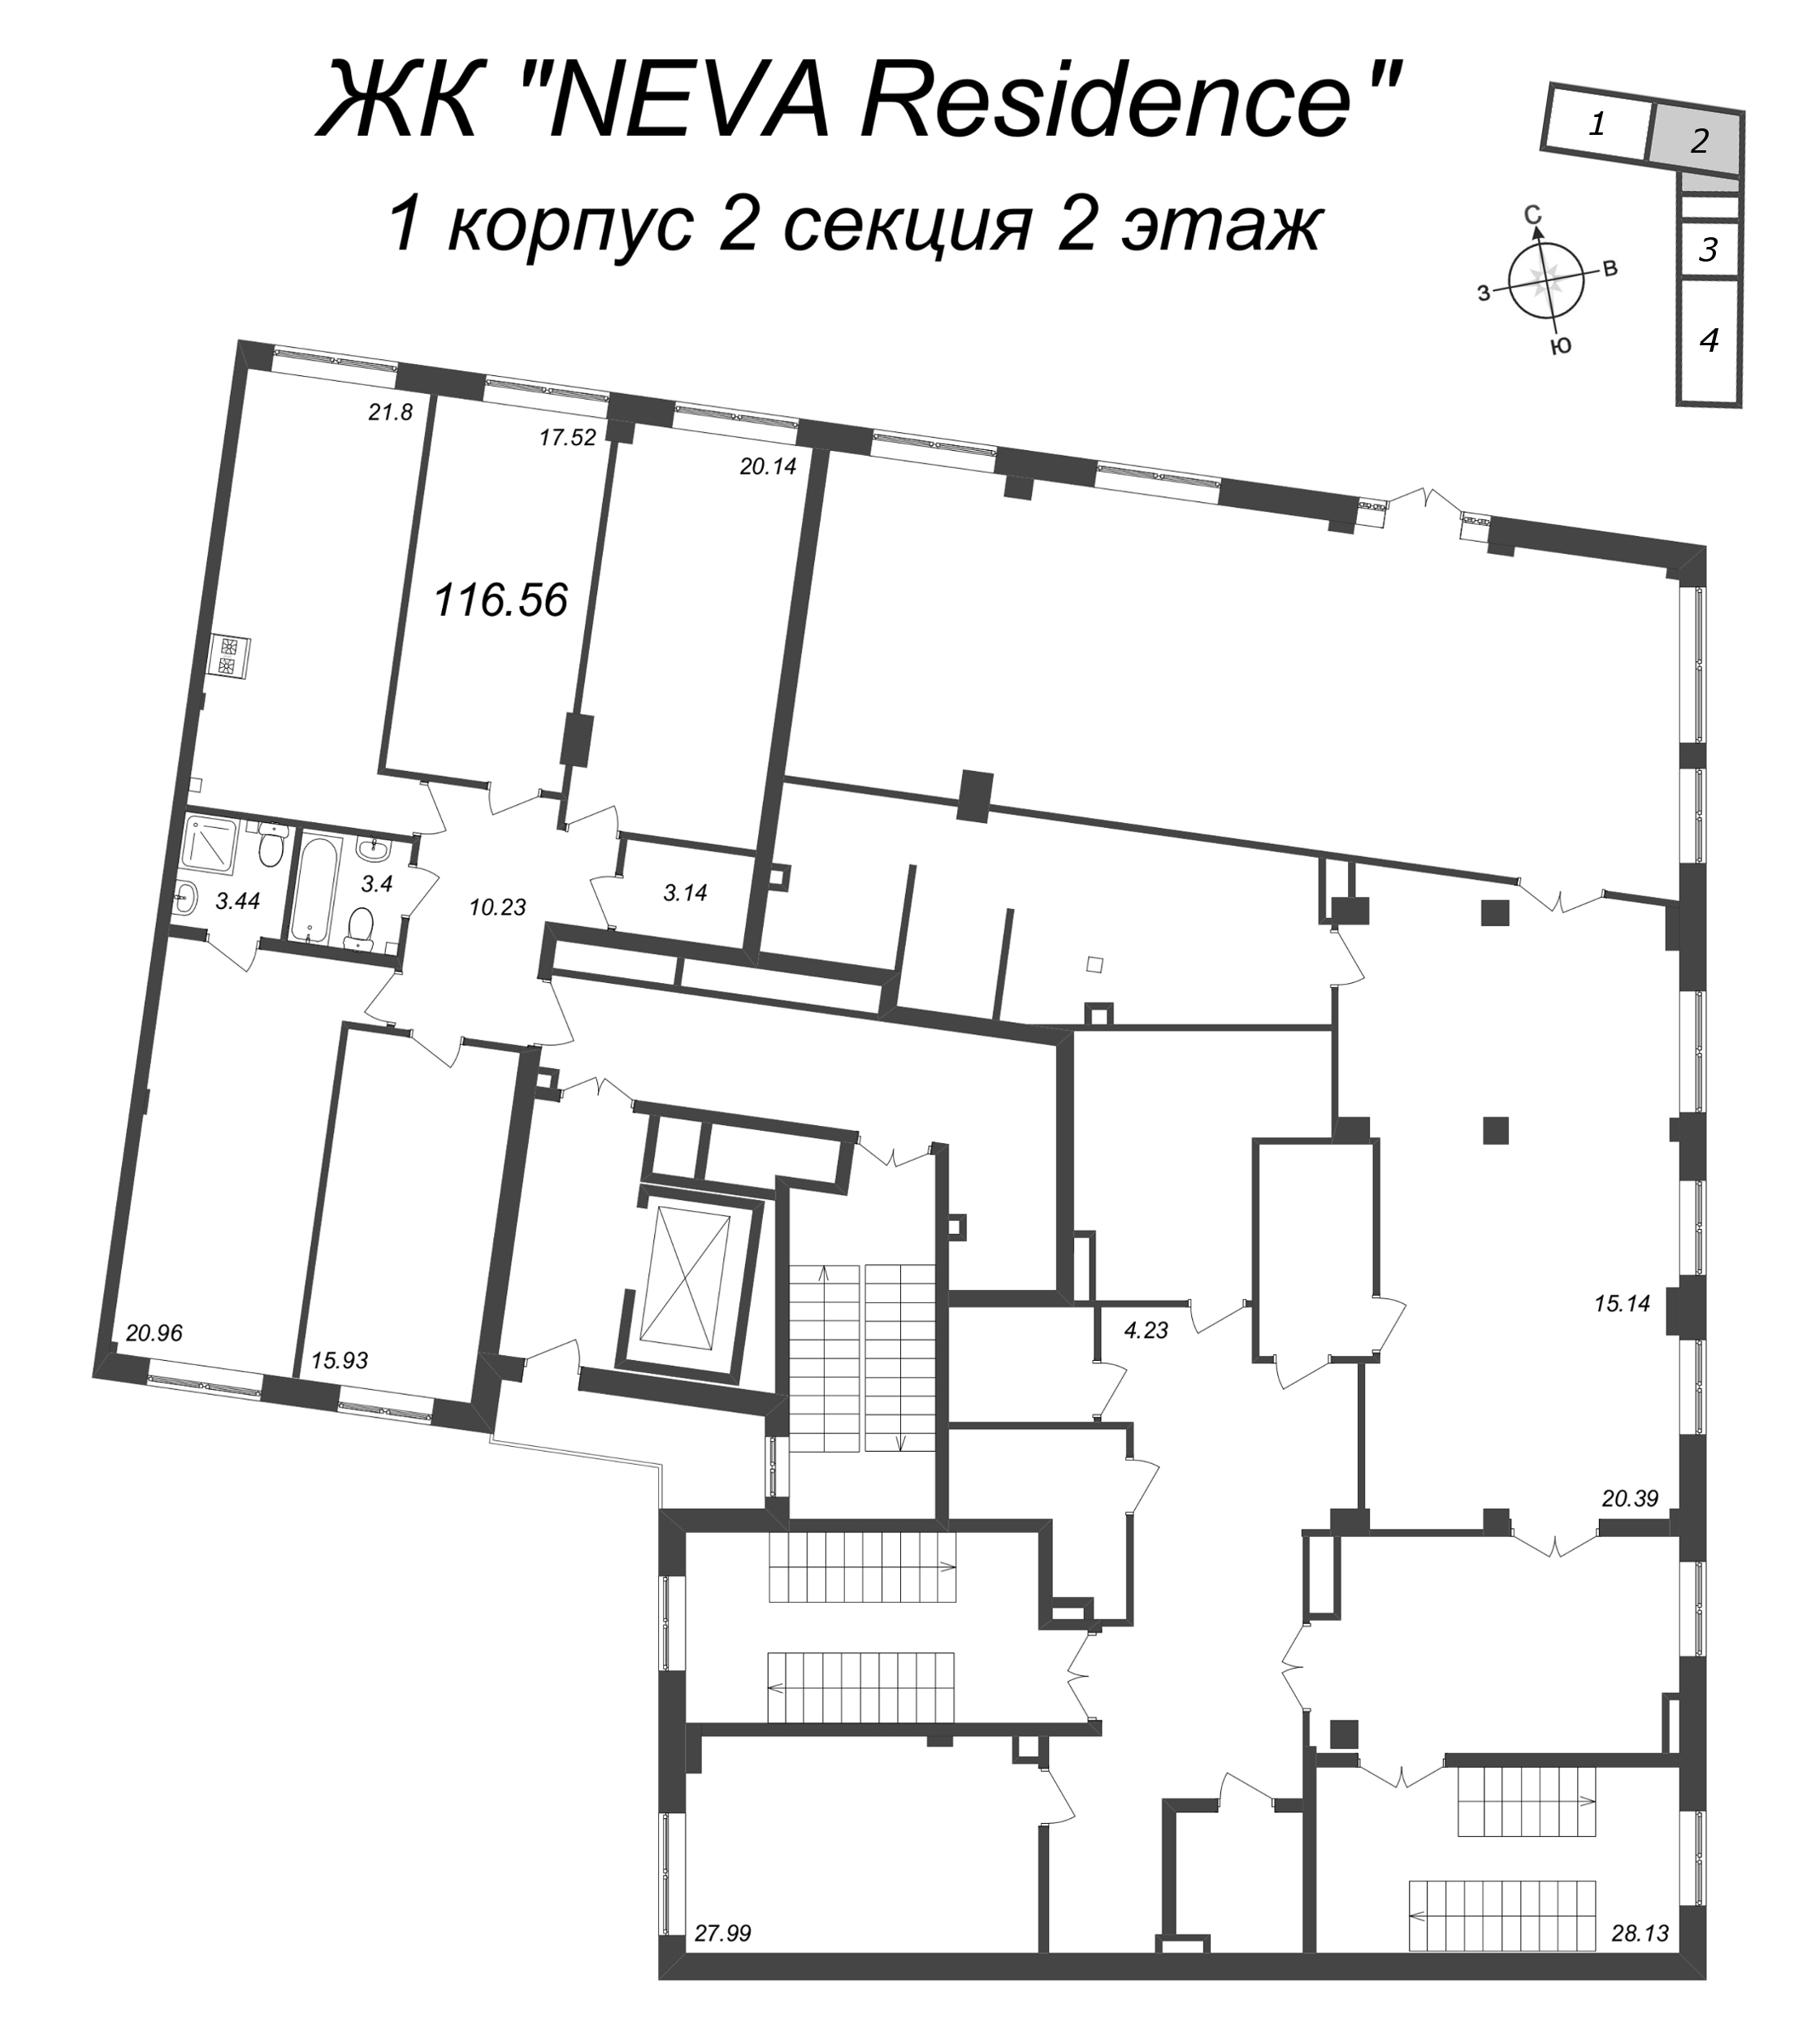 5-комнатная (Евро) квартира, 116.56 м² в ЖК "Neva Residence" - планировка этажа